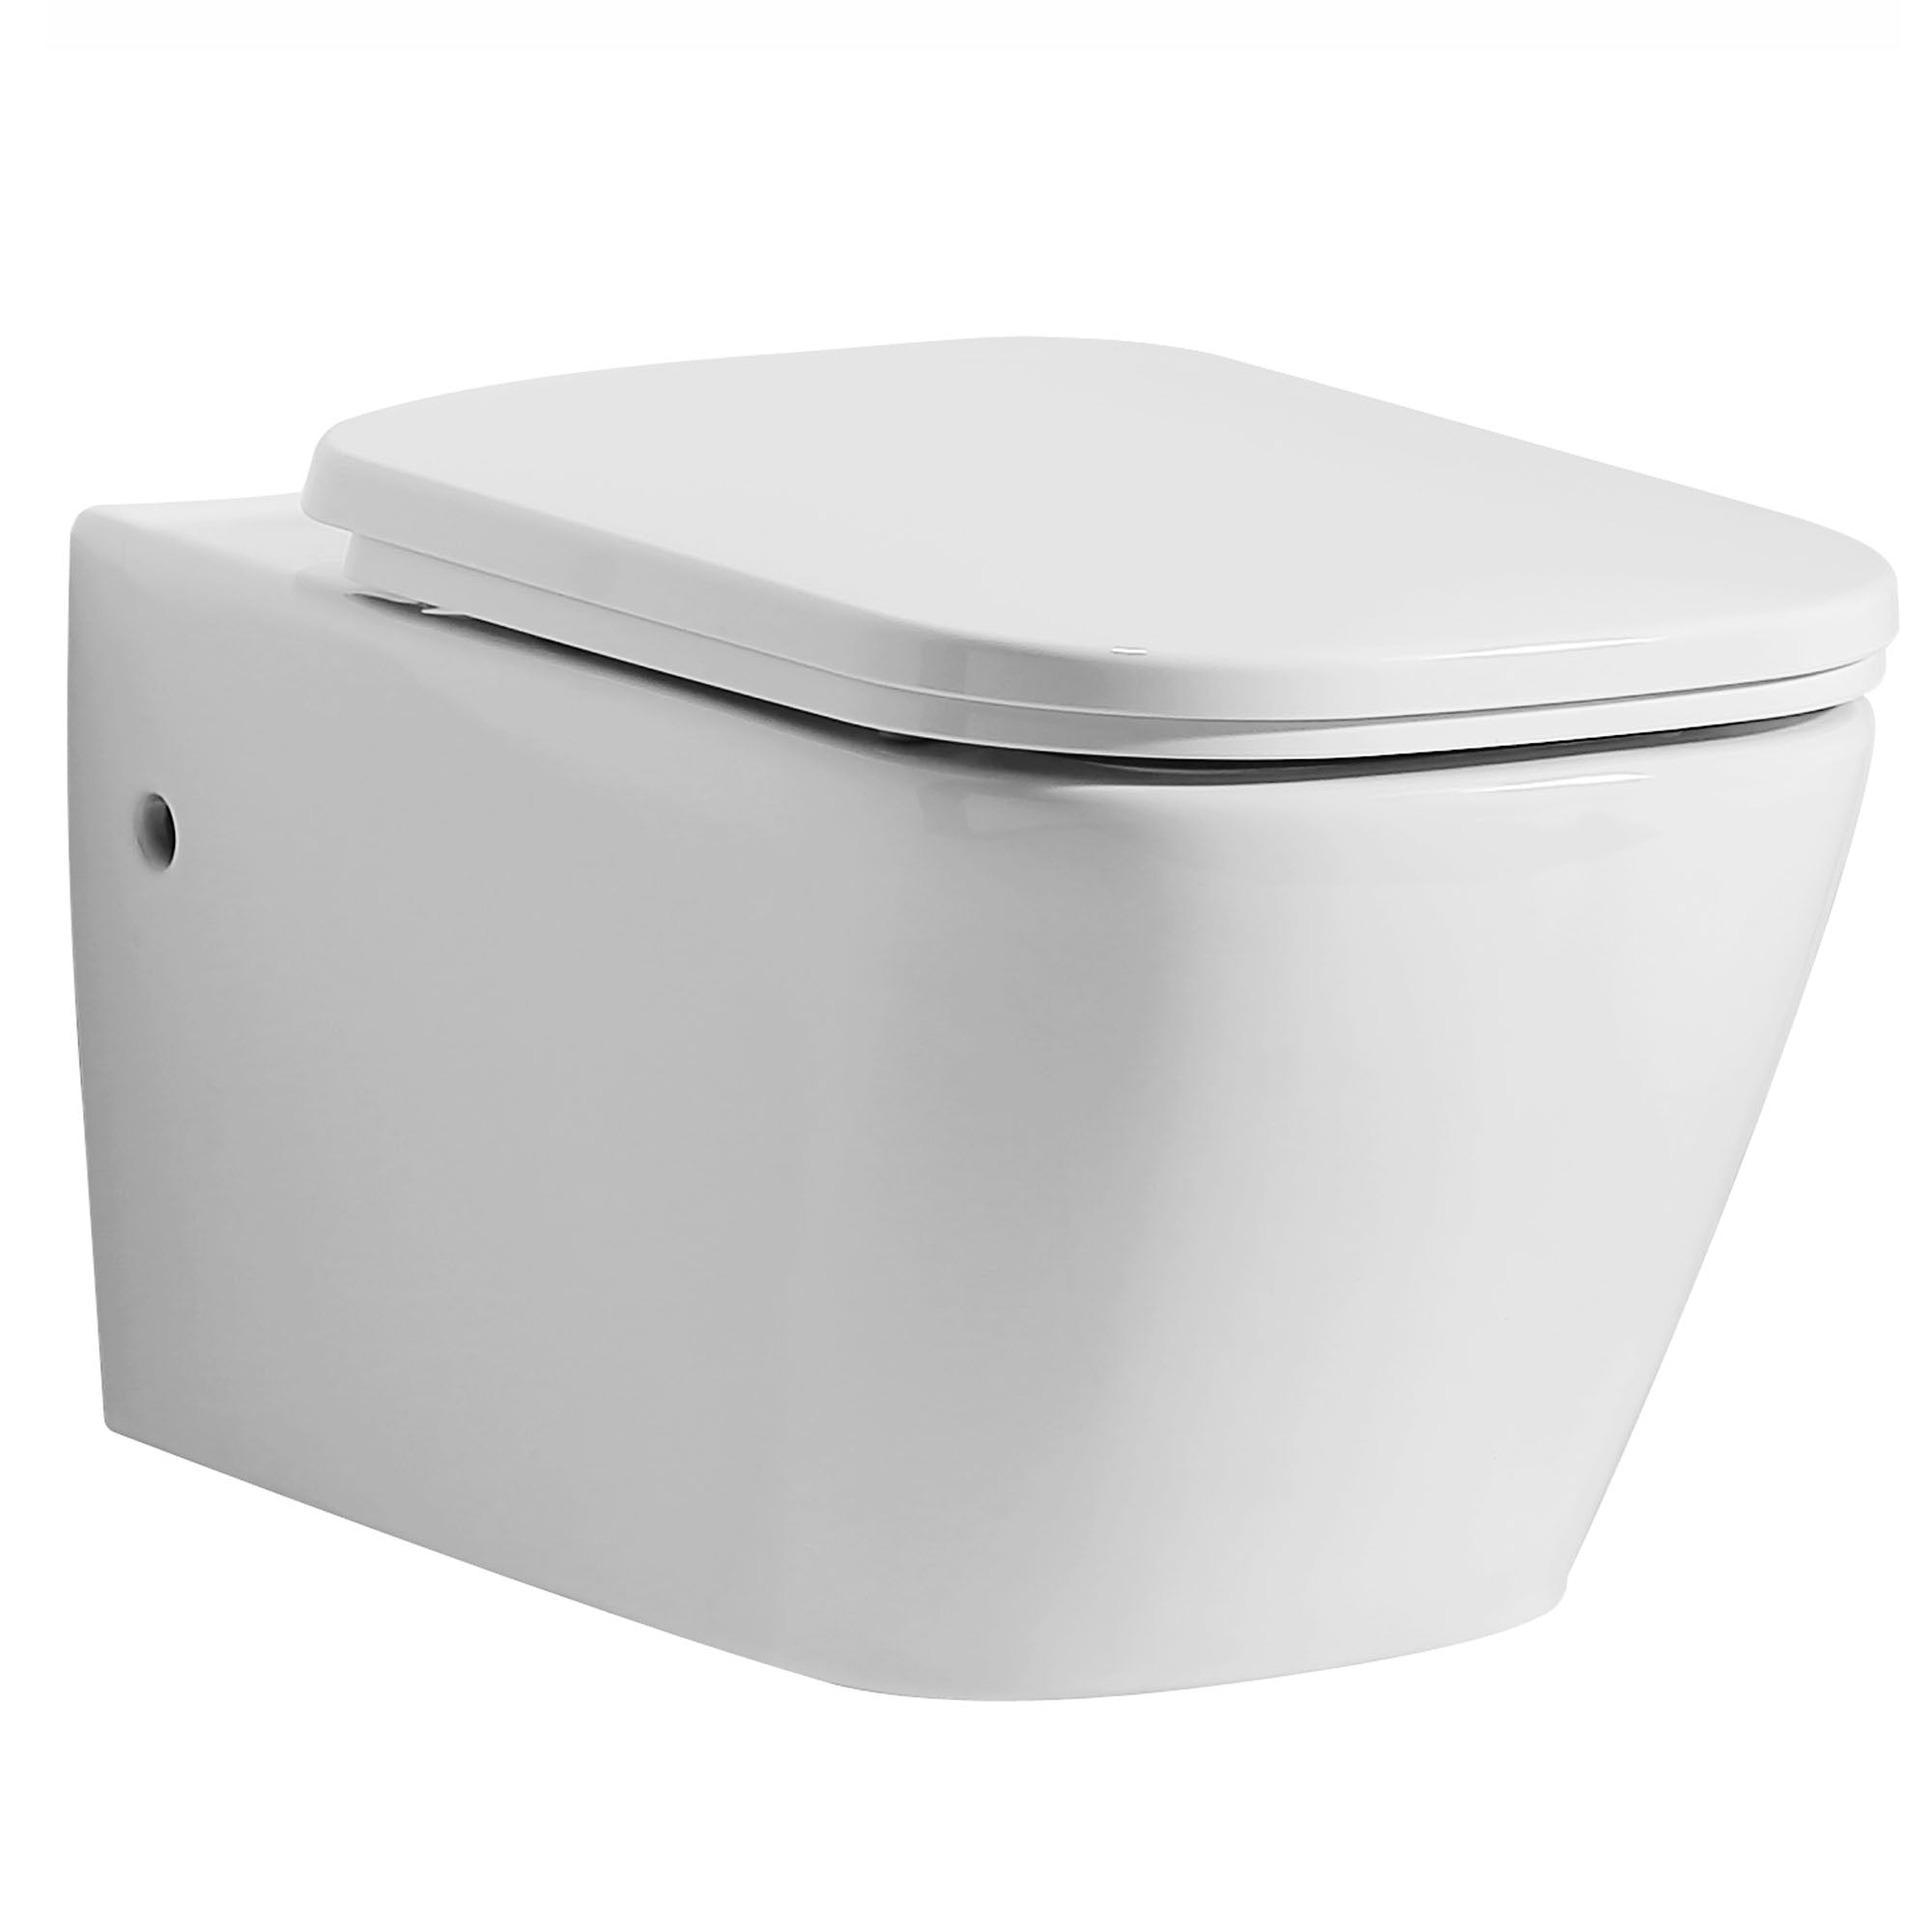 EAGO WD390 Toilet Bowl White Modern Ceramic Wall Mounted